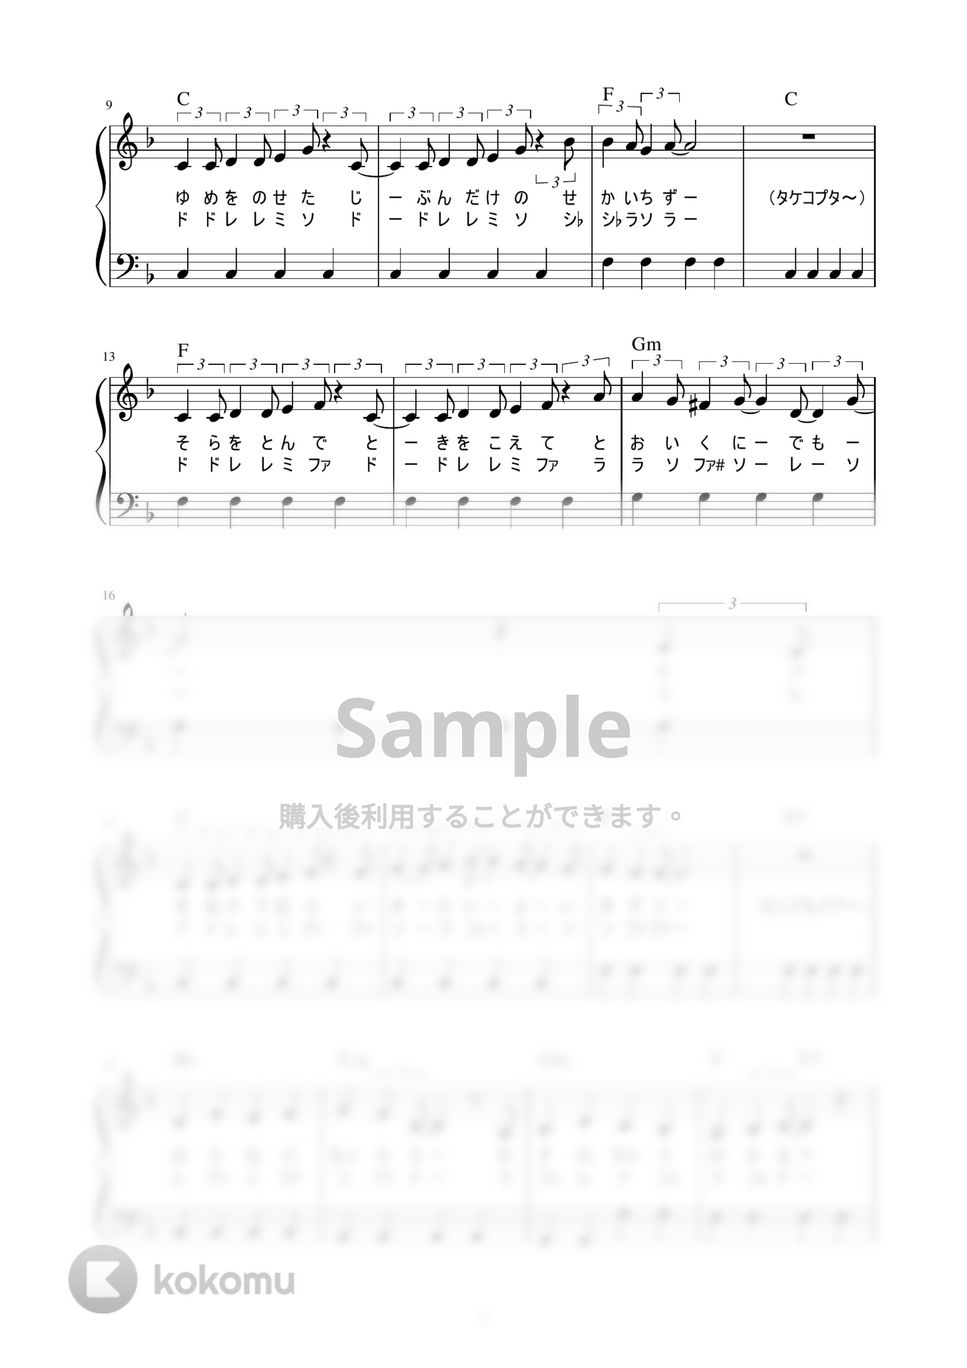 mao - 夢をかなえてドラえもん (かんたん / 歌詞付き / ドレミ付き / 初心者) by piano.tokyo